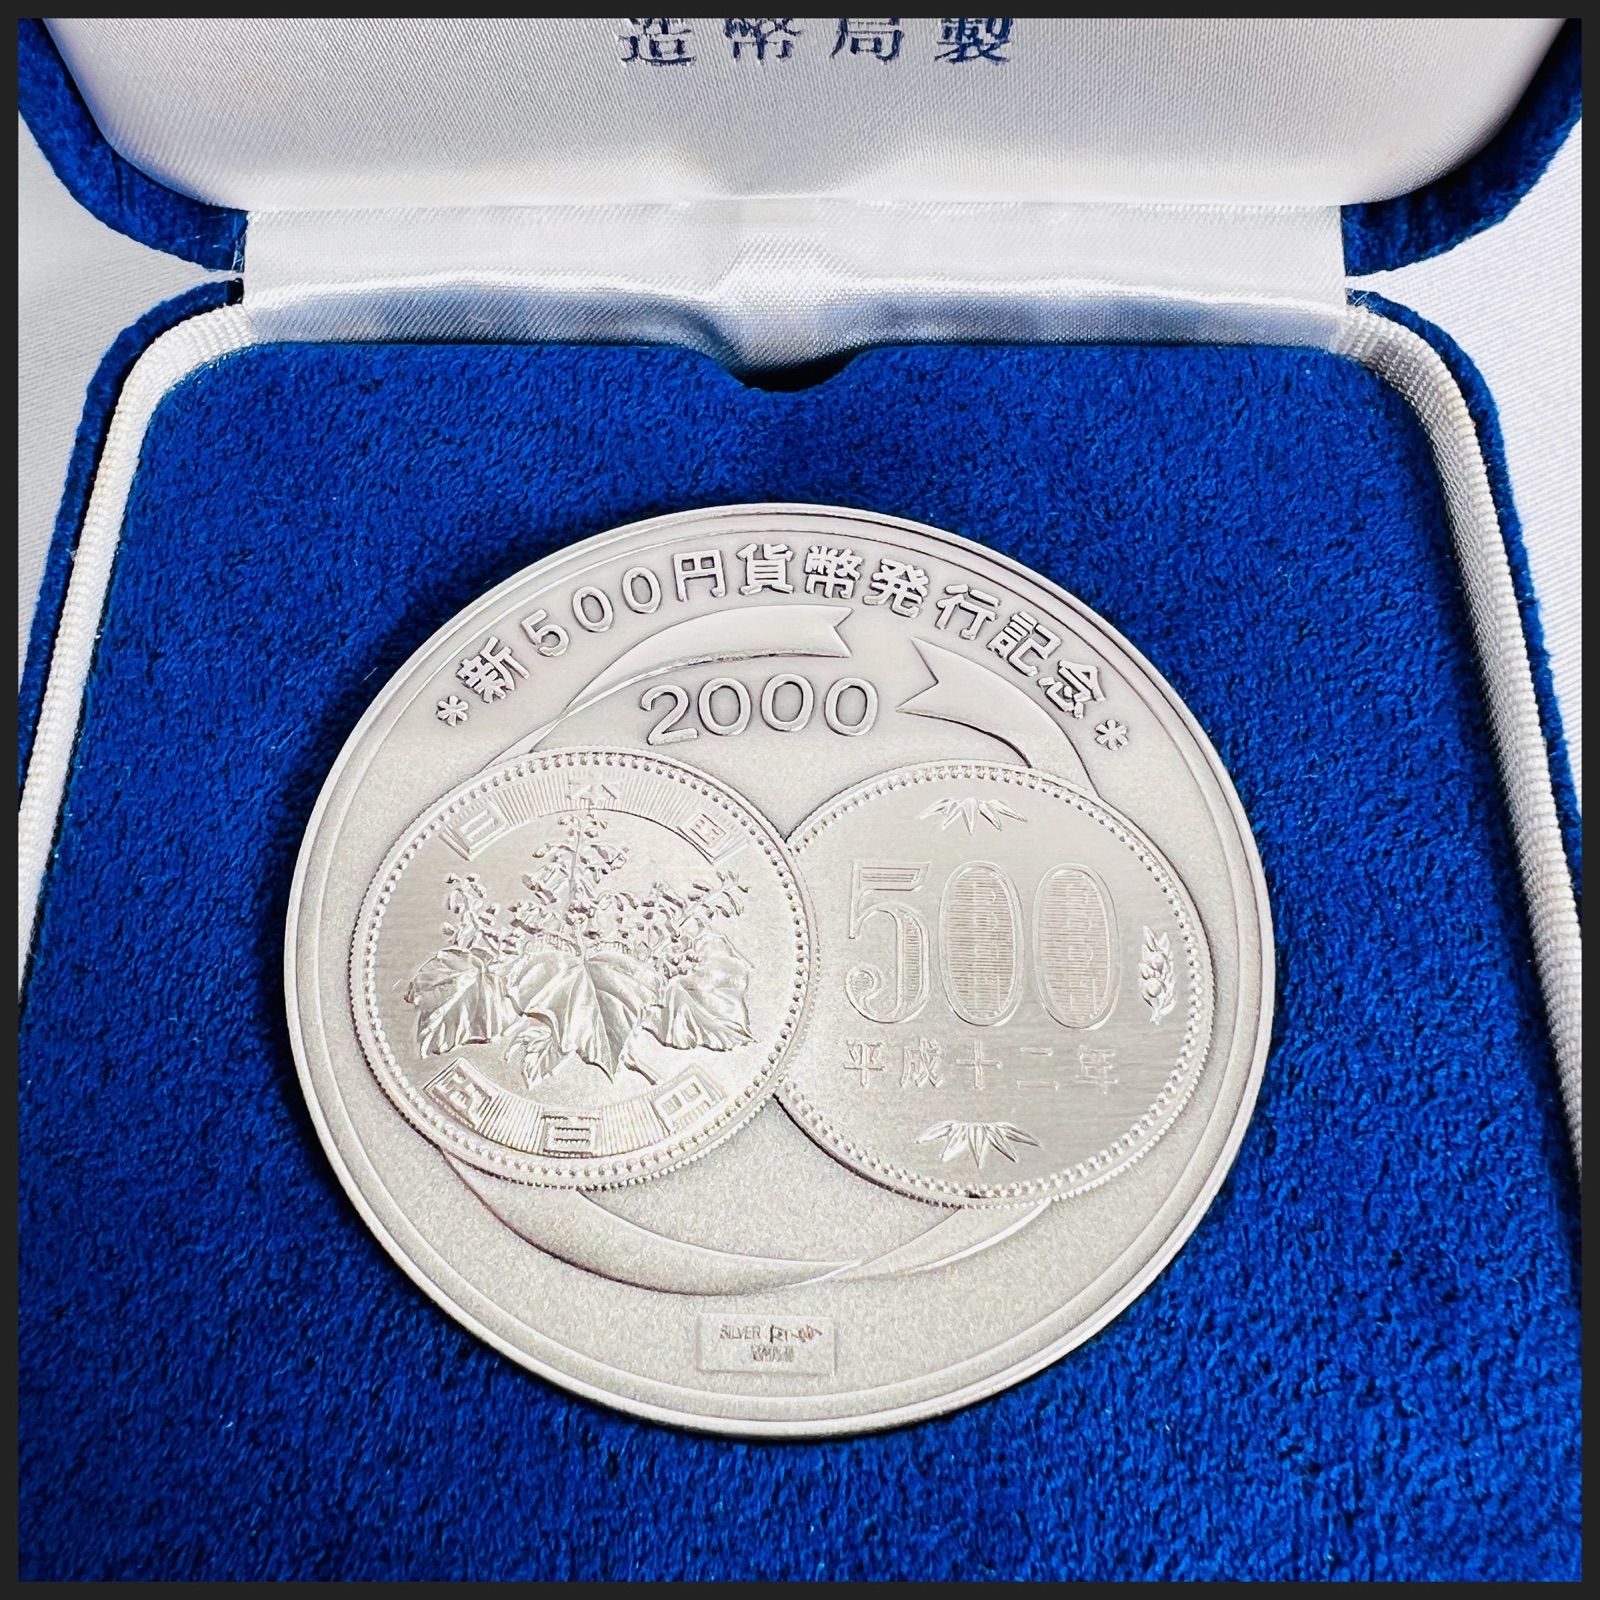 新５００円貨幣発行 記念 銀メダル - コレクション